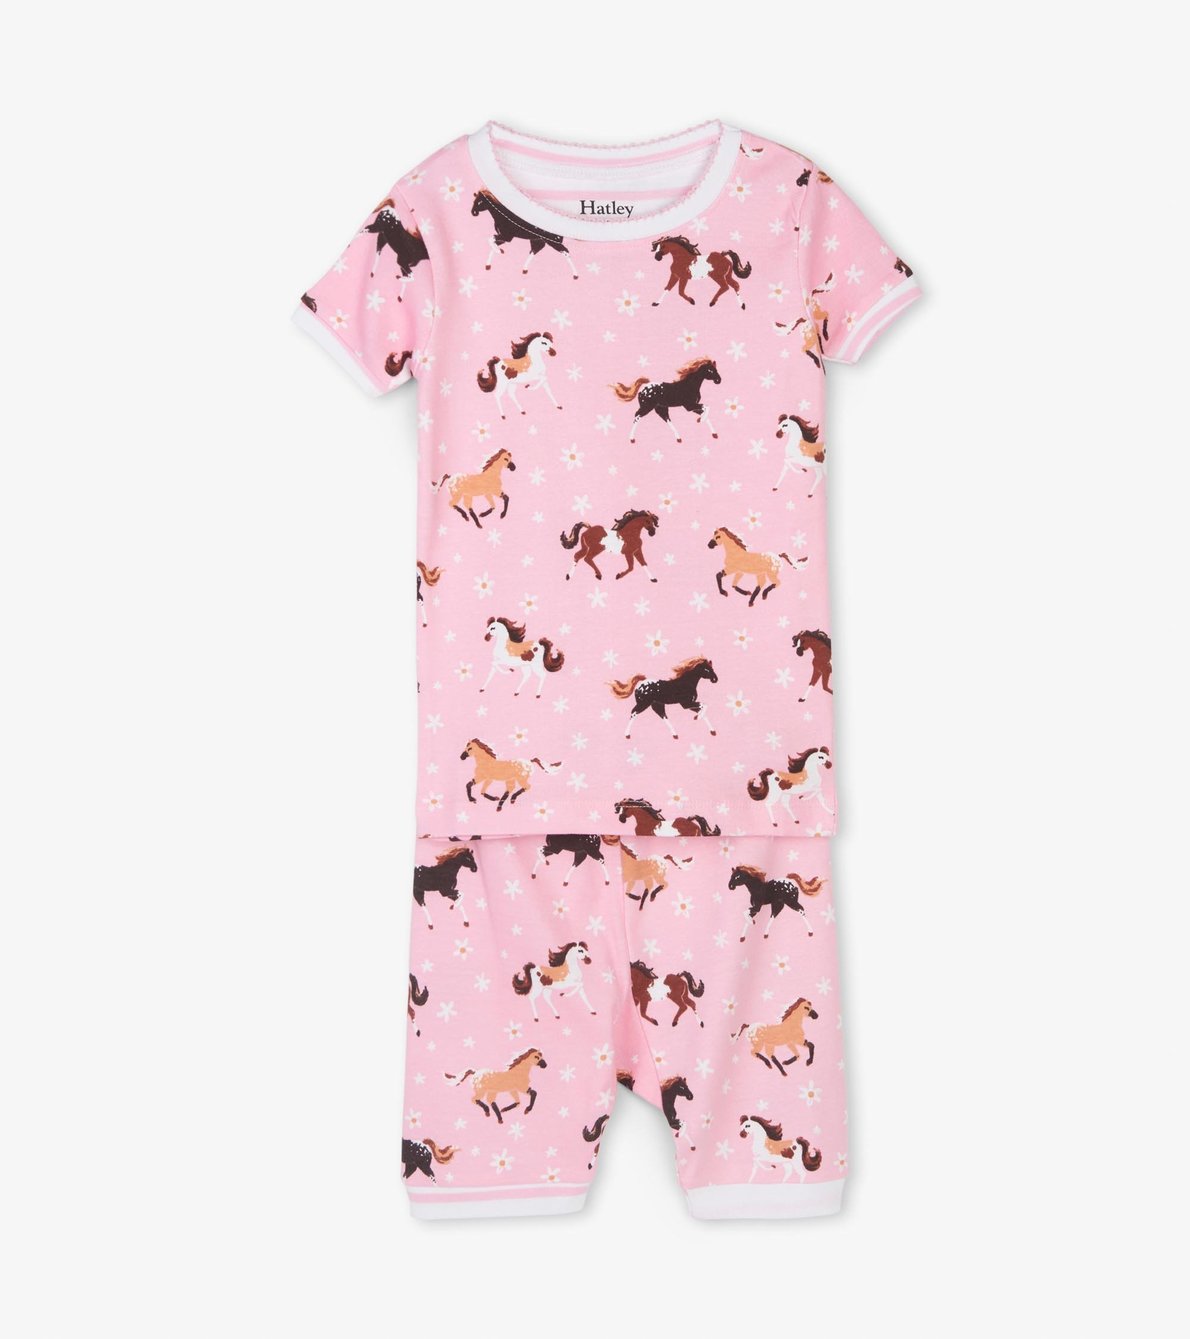 View larger image of Frolicking Horses Organic Cotton Short Pajama Set